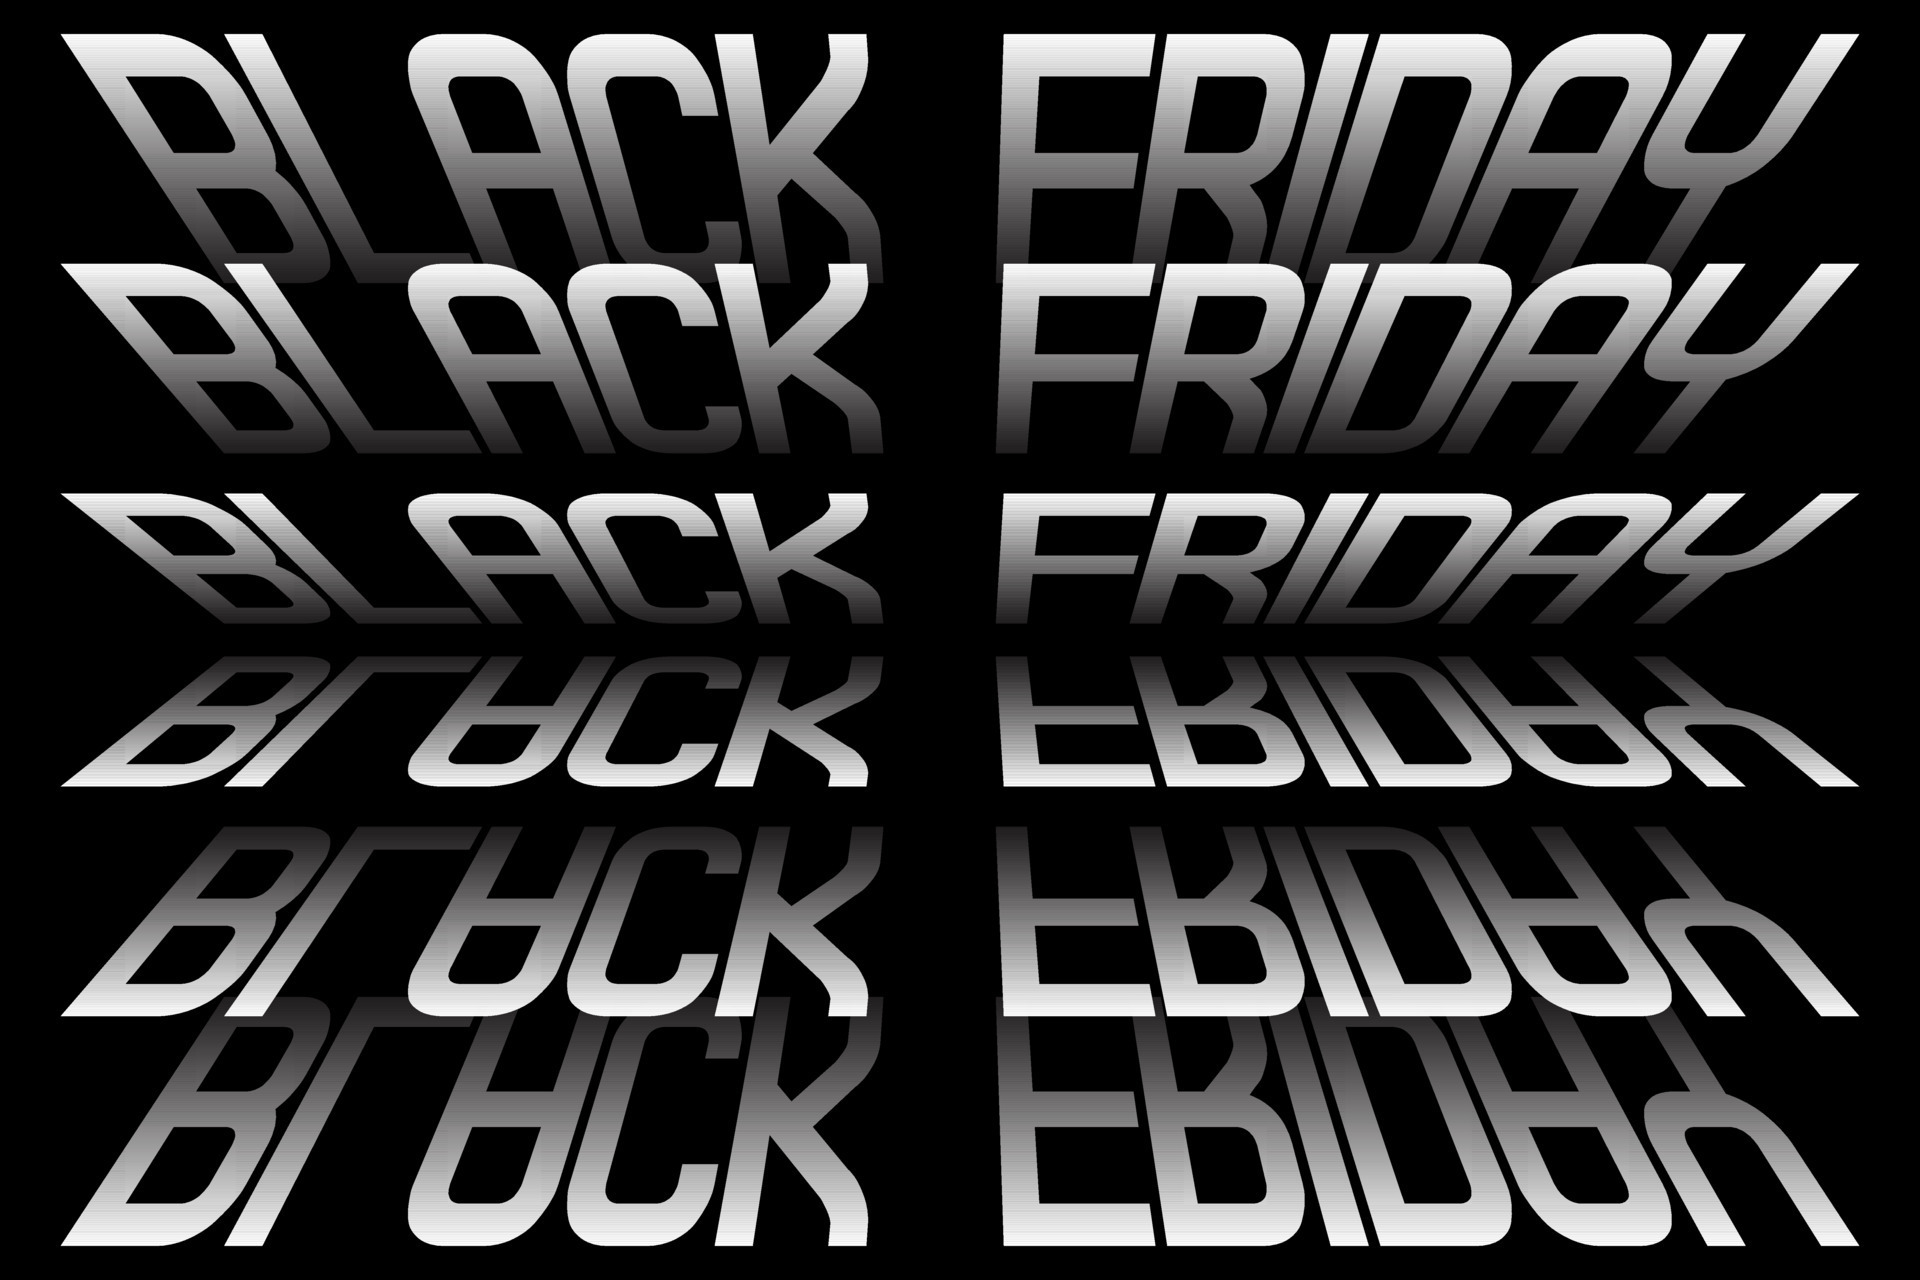 Thiết kế Black Friday cho quảng cáo, biểu ngữ, tờ rơi và flyer - Để thu hút khách hàng trong ngày Black Friday, hình ảnh thiết kế về quảng cáo, biển hiệu, tờ rơi hay flyer sẽ là lựa chọn phù hợp. Thiết kế đẹp mắt, chuyên nghiệp và cuốn hút sẽ giúp sản phẩm của bạn nổi bật hơn trong dịp này.